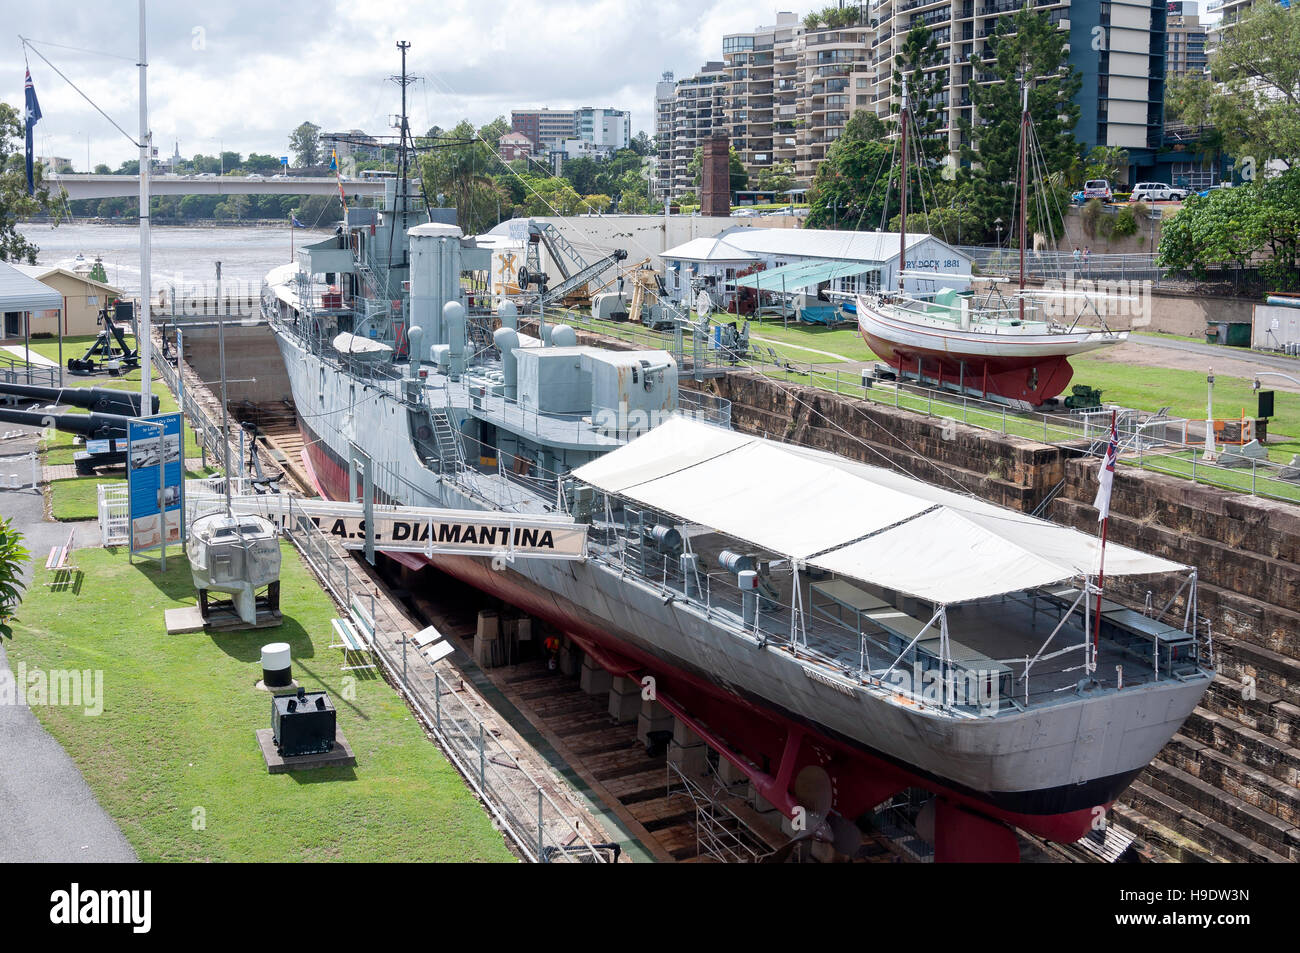 Le HMAS Diamantina en cale sèche à Queensland Marine Museum Park, Kangaroo Point, ville Brisbane, Brisbane, Queensland, Australie Banque D'Images